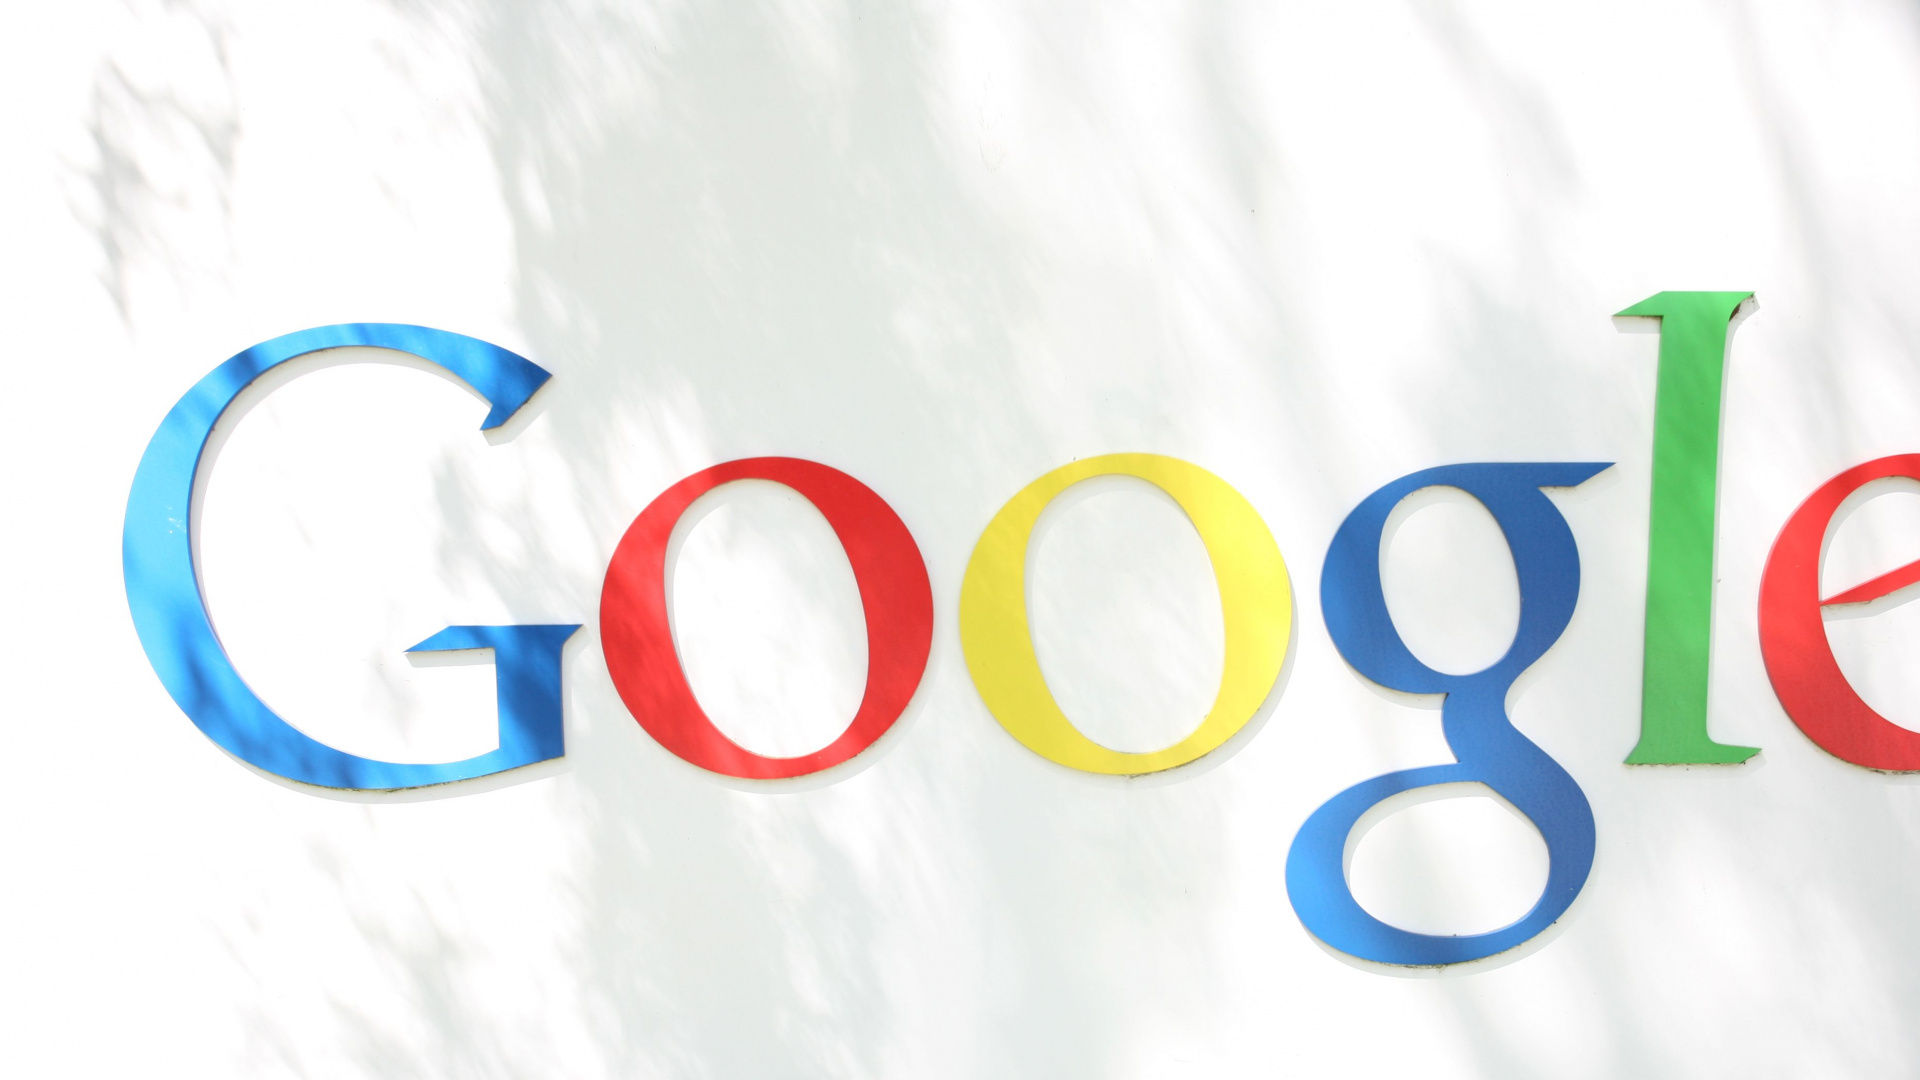 谷歌, 谷歌的标志, 谷歌玩, 文本, 品牌 壁纸 1920x1080 允许